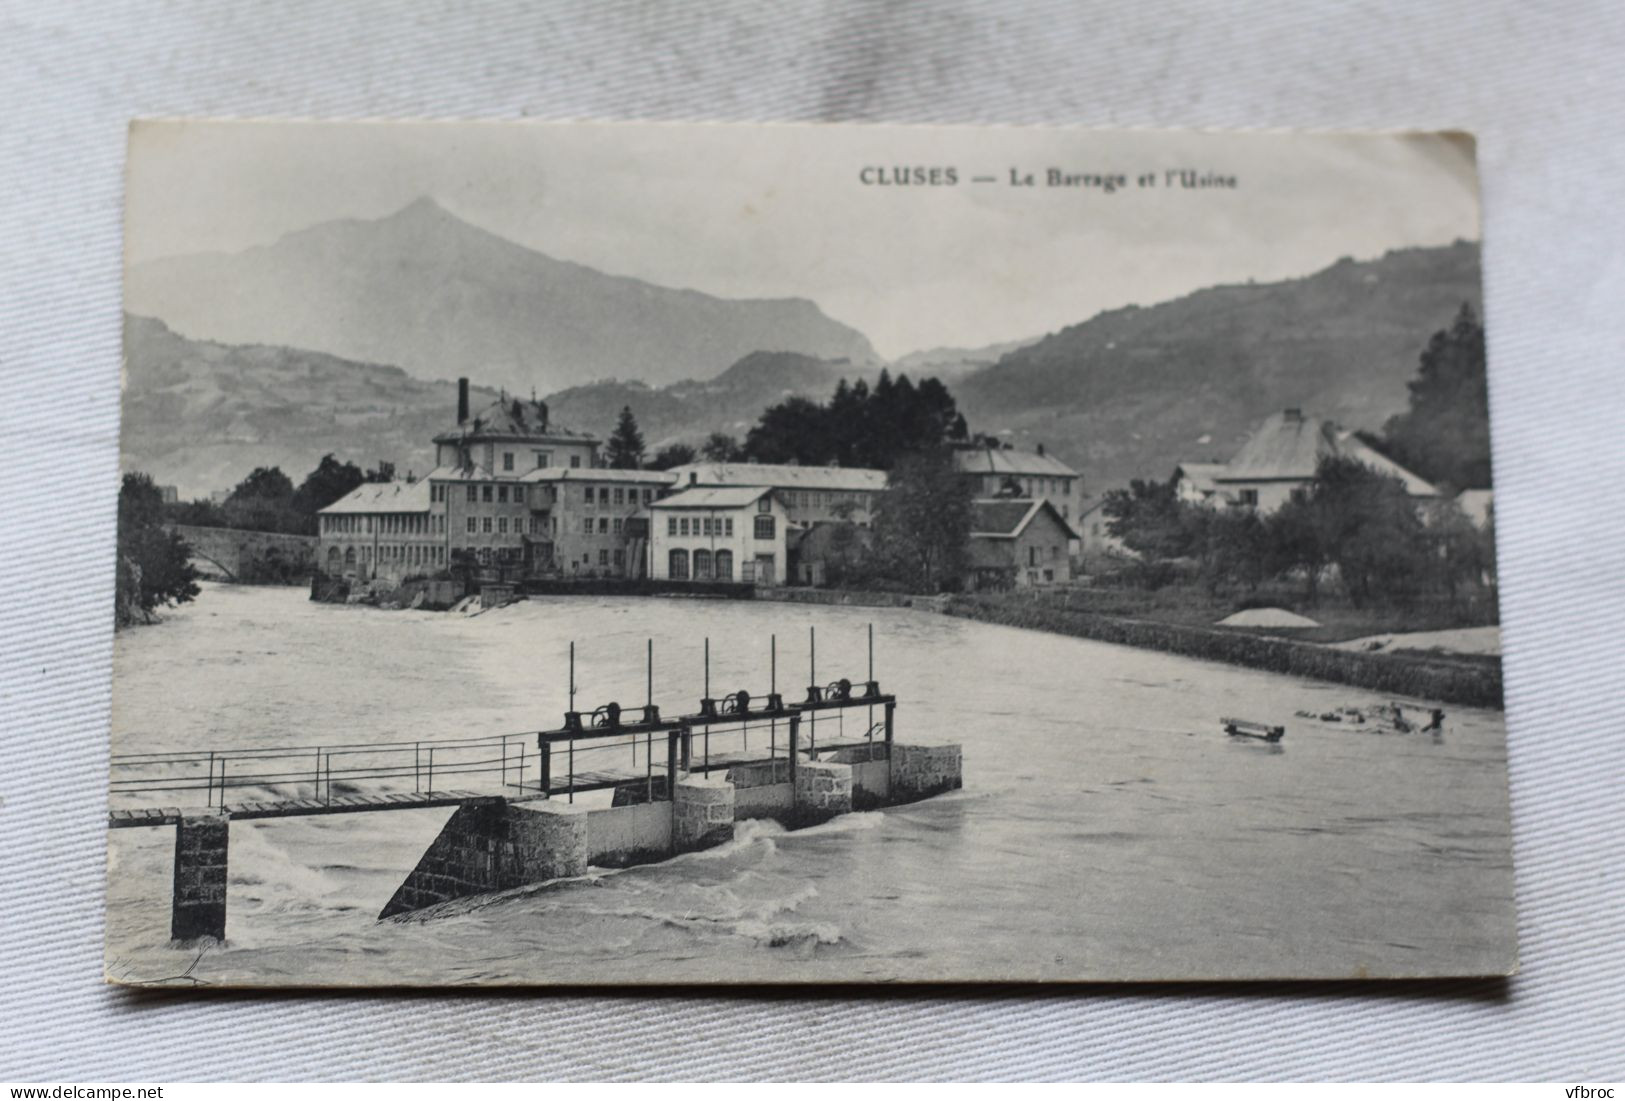 Cluses, Le Barrage Et L'usine, Haute Savoie 74 - Cluses